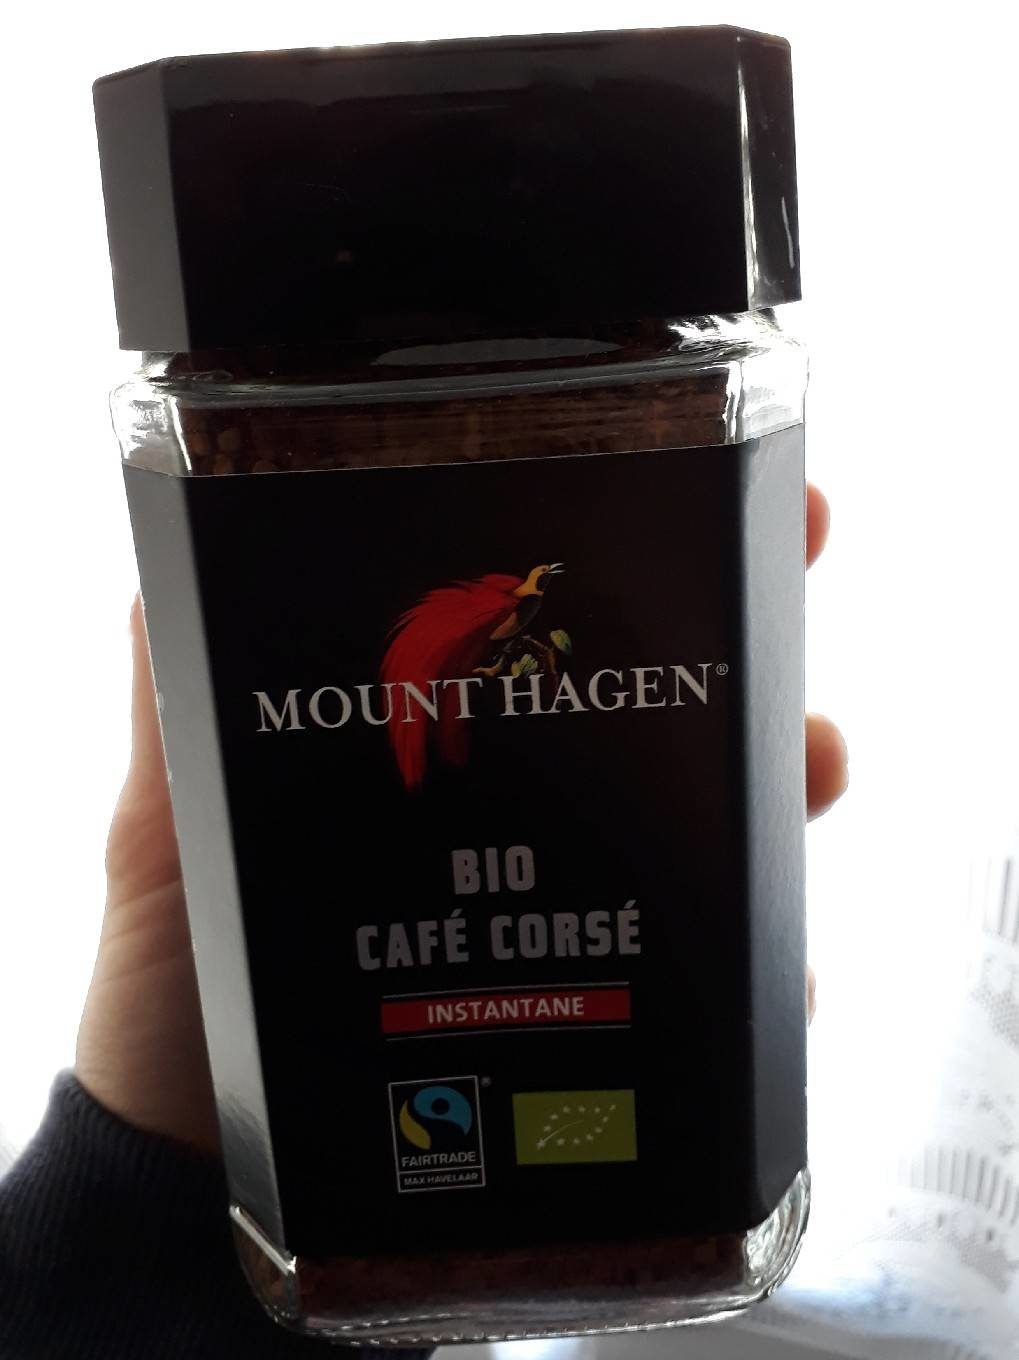 Bio café corsé instantané - Tableau nutritionnel